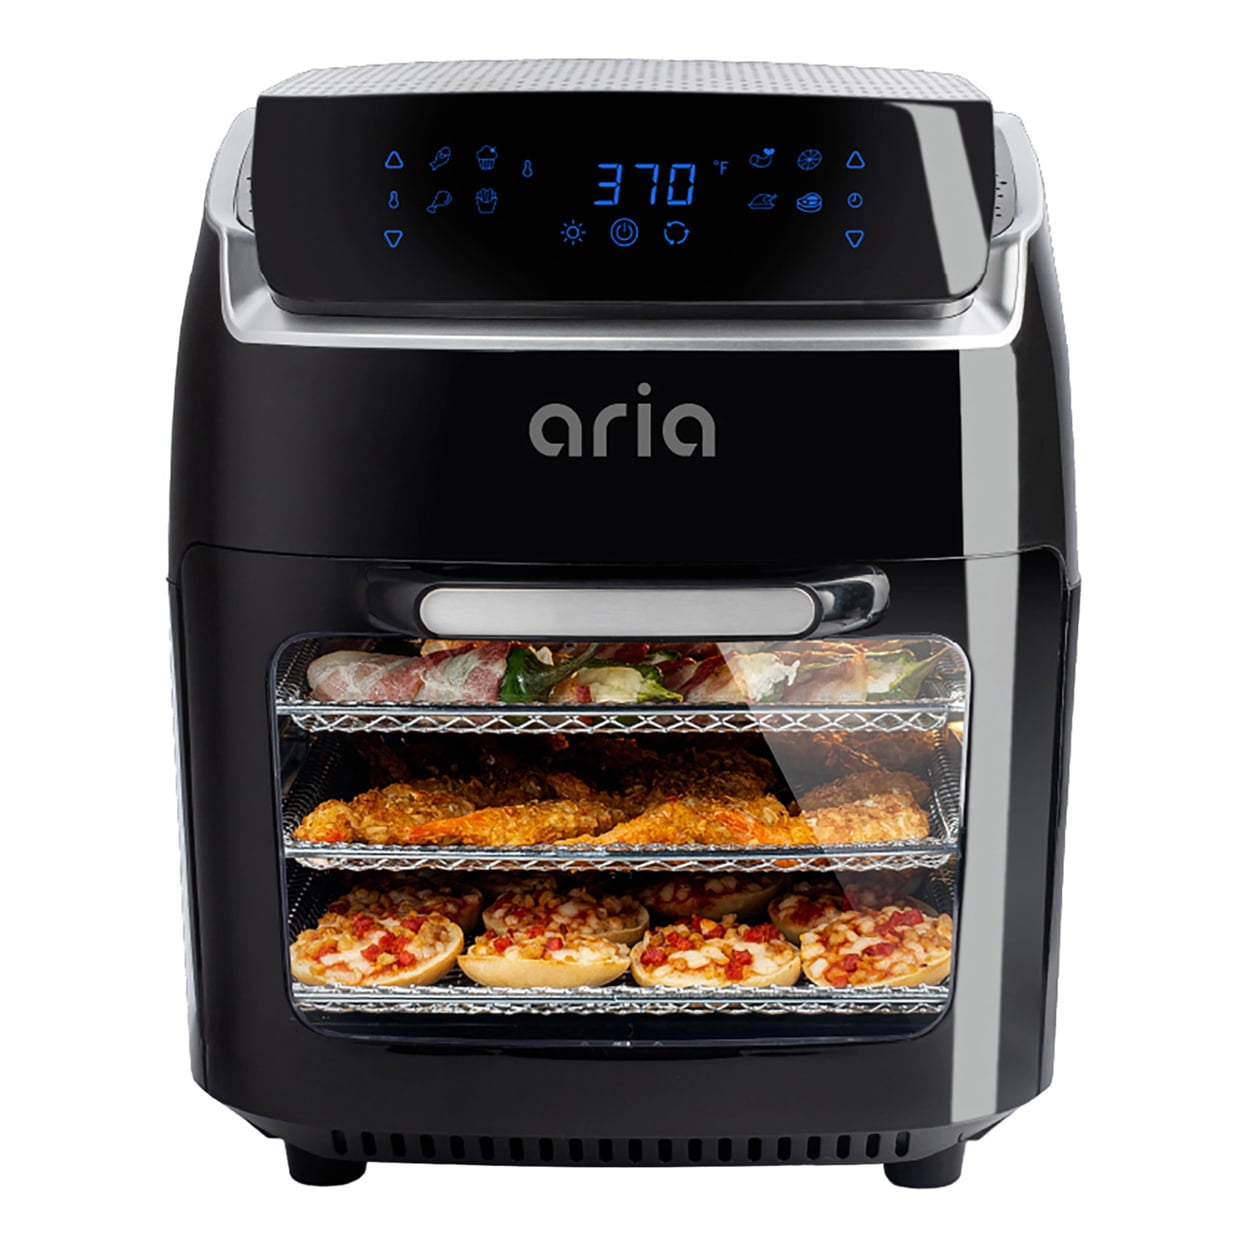 Aria Premium 2 Qt. Retro Style Ceramic Air Fryer, Black/Stainless